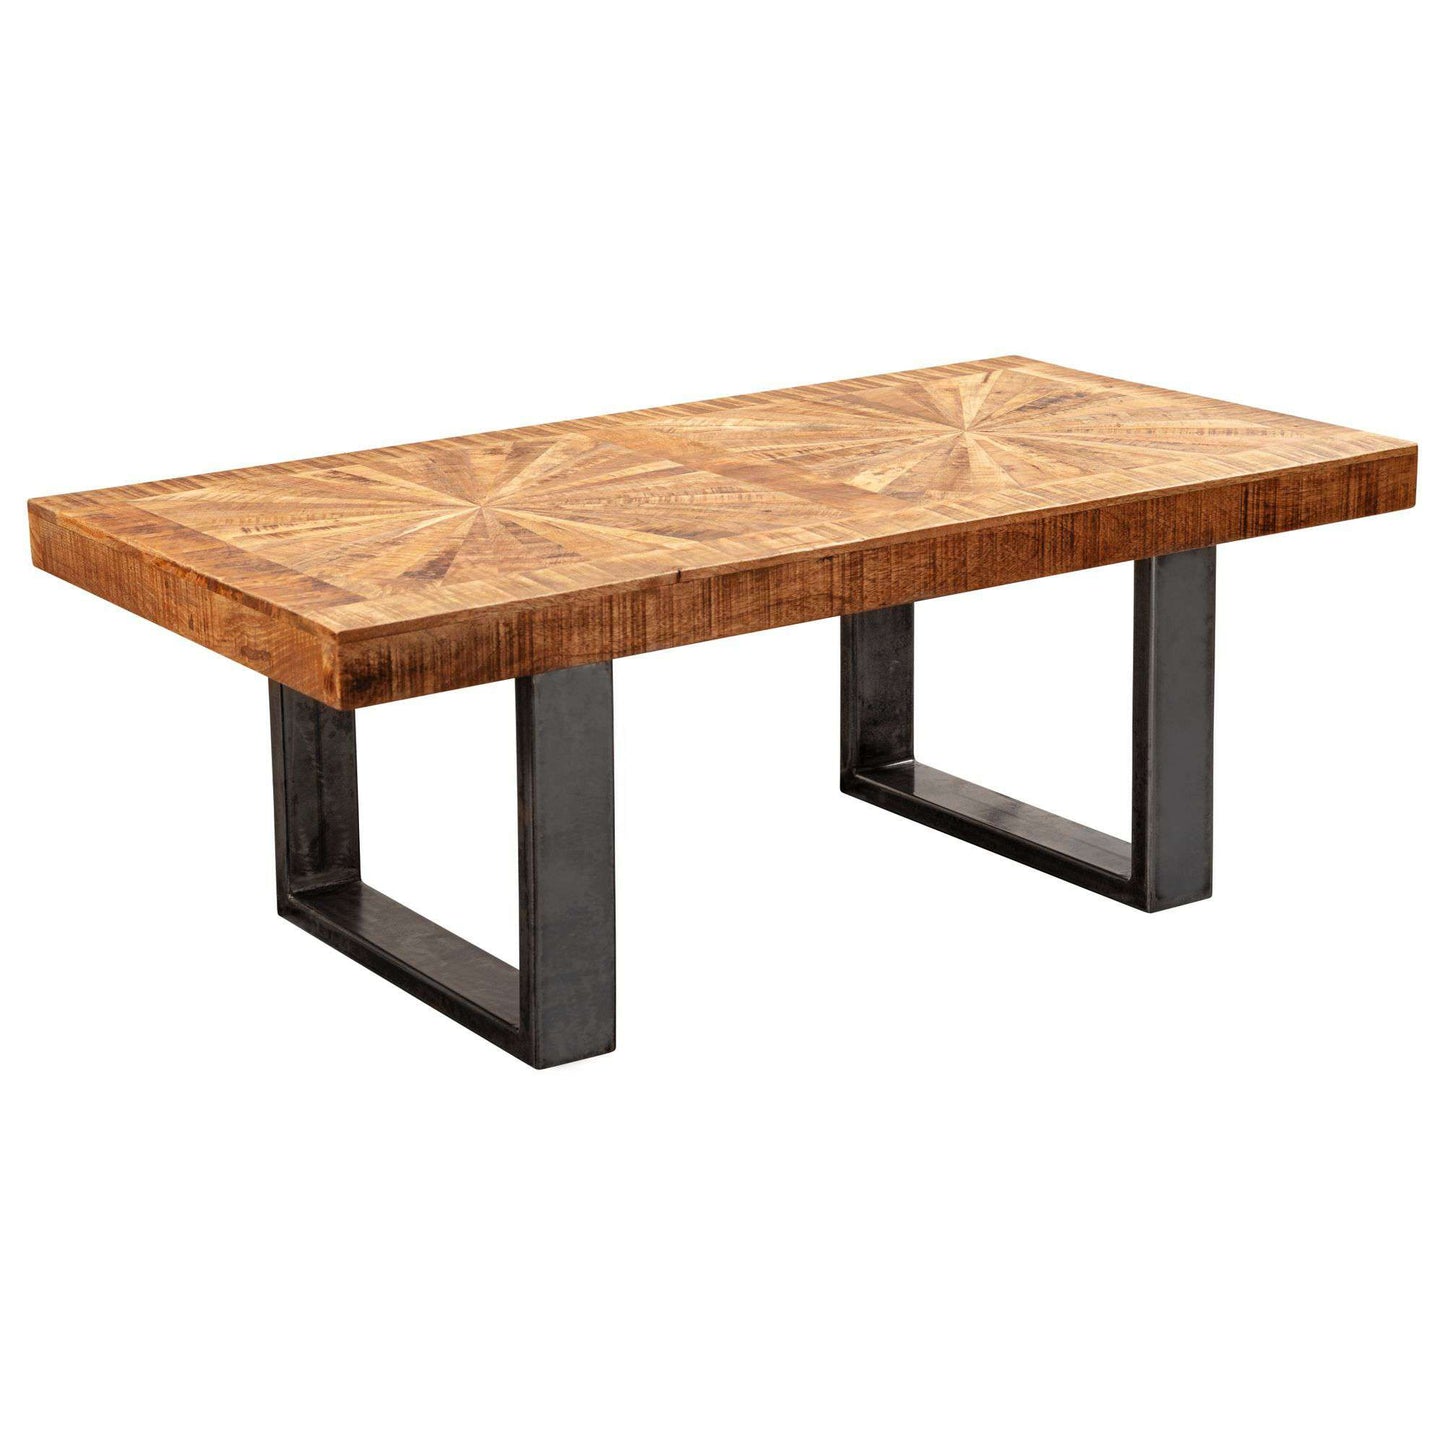 Table basse industrielle de Nancy - Bois de manguier - Table basse - Table d'appoint - Tables basses - 105 x 55 cm